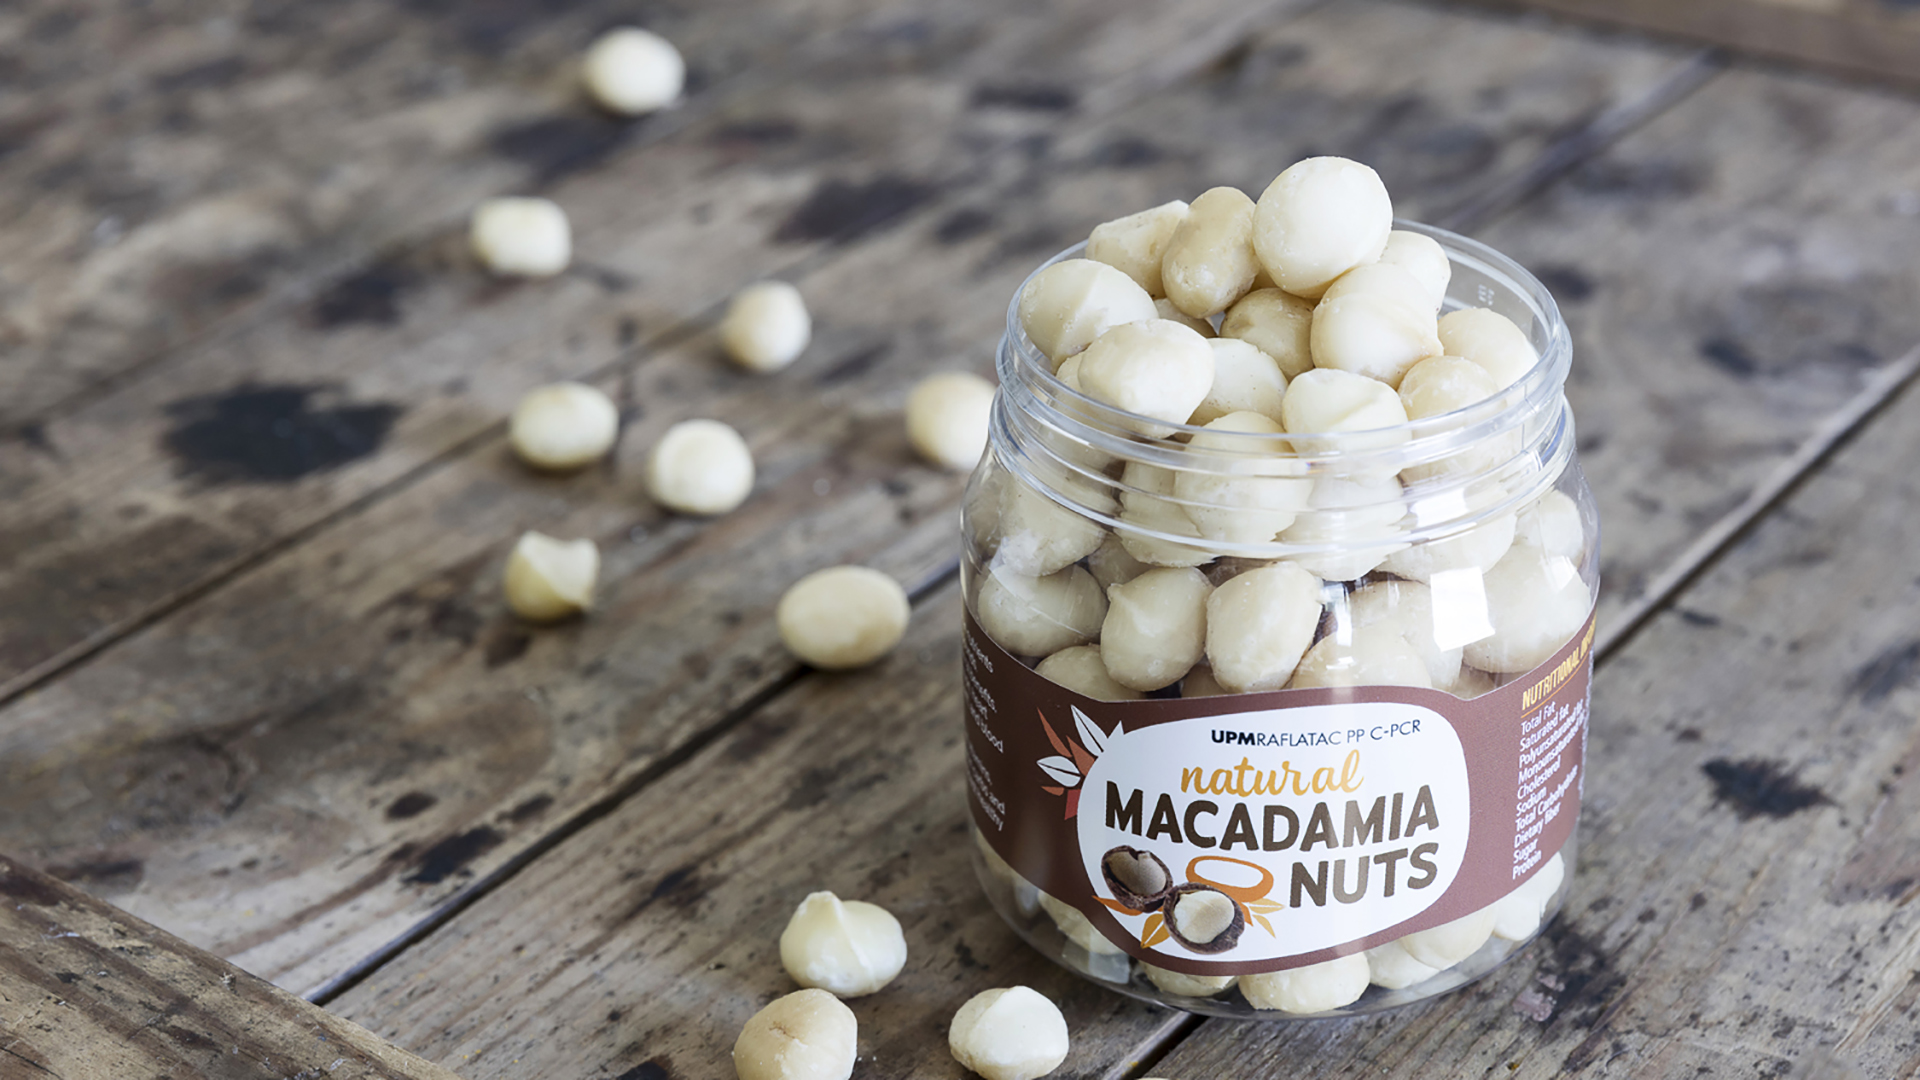 macadamia-nuts-packaging.jpg